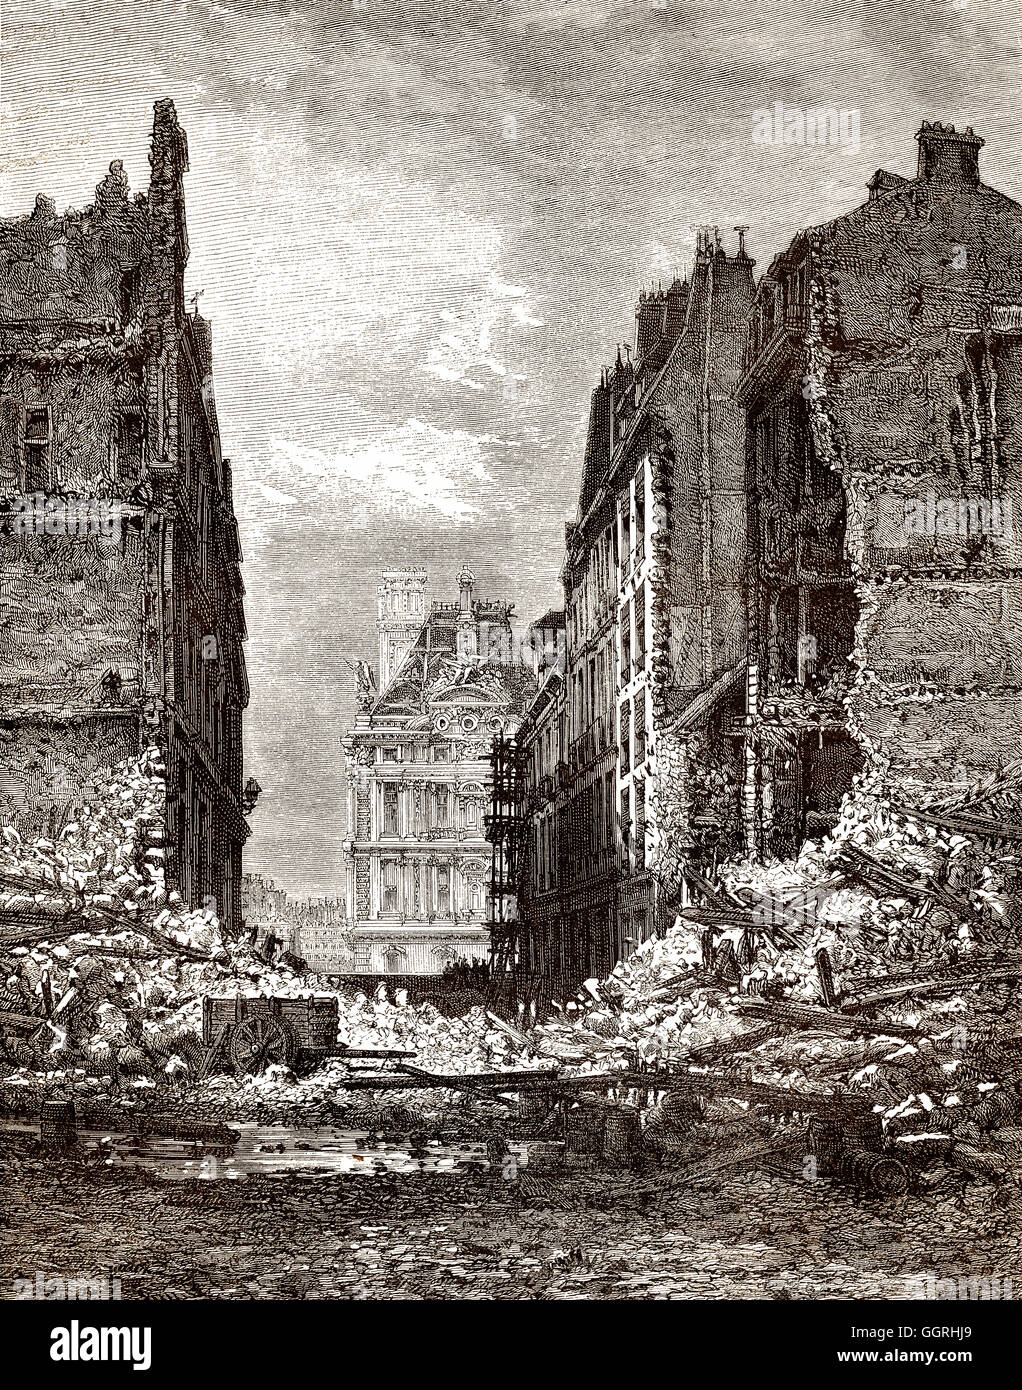 Les maisons détruites par la Commune de Paris ou la Commune de Paris, 1871, Rue du Bac, Paris, France, Europe Banque D'Images